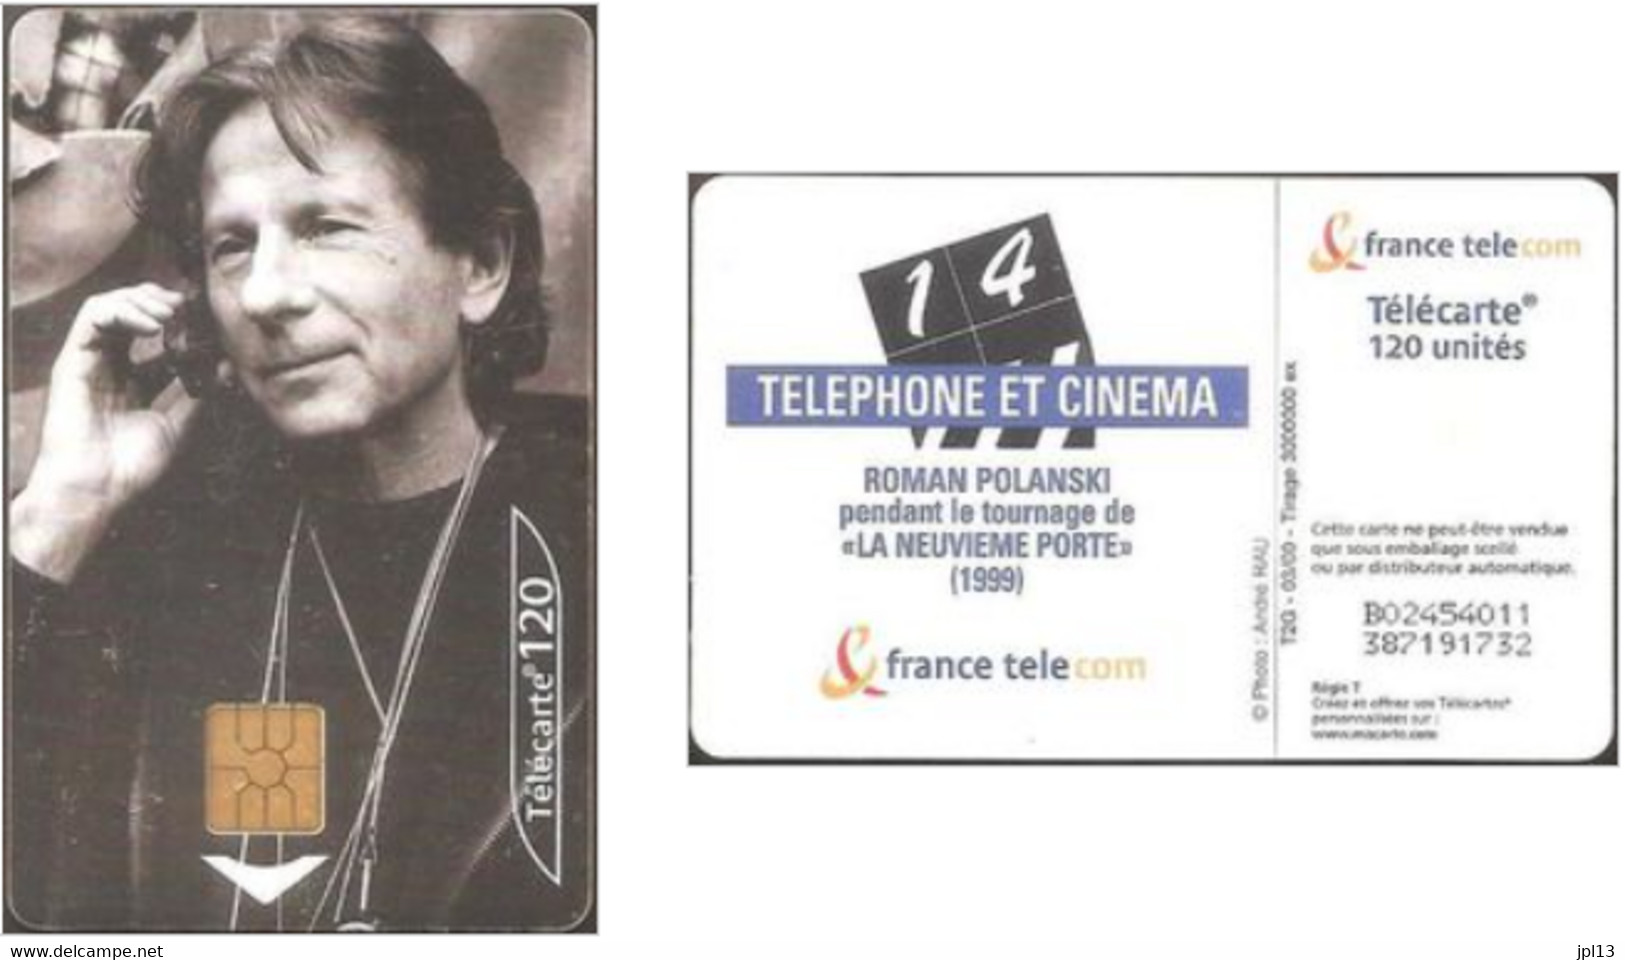 Carte à Puce - France Télécom - Telephone Et Cinema N. 14 - Roman Polanski (GEM2 Black), Réf. 1047 - 2000